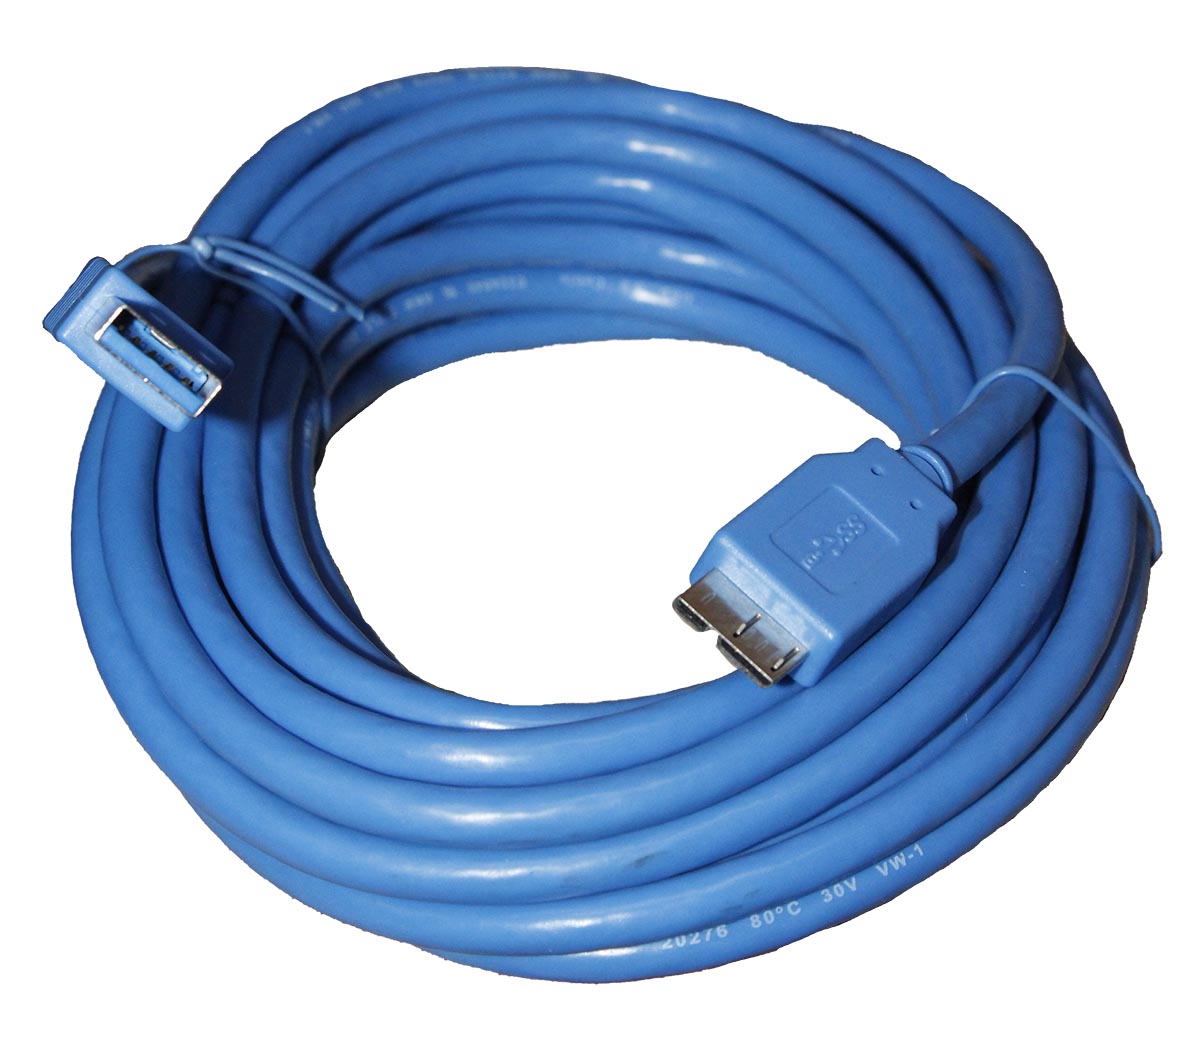 Cable de USB tipo A macho a USB tipo B macho 1m - EC1391M - TRANSMEDIA